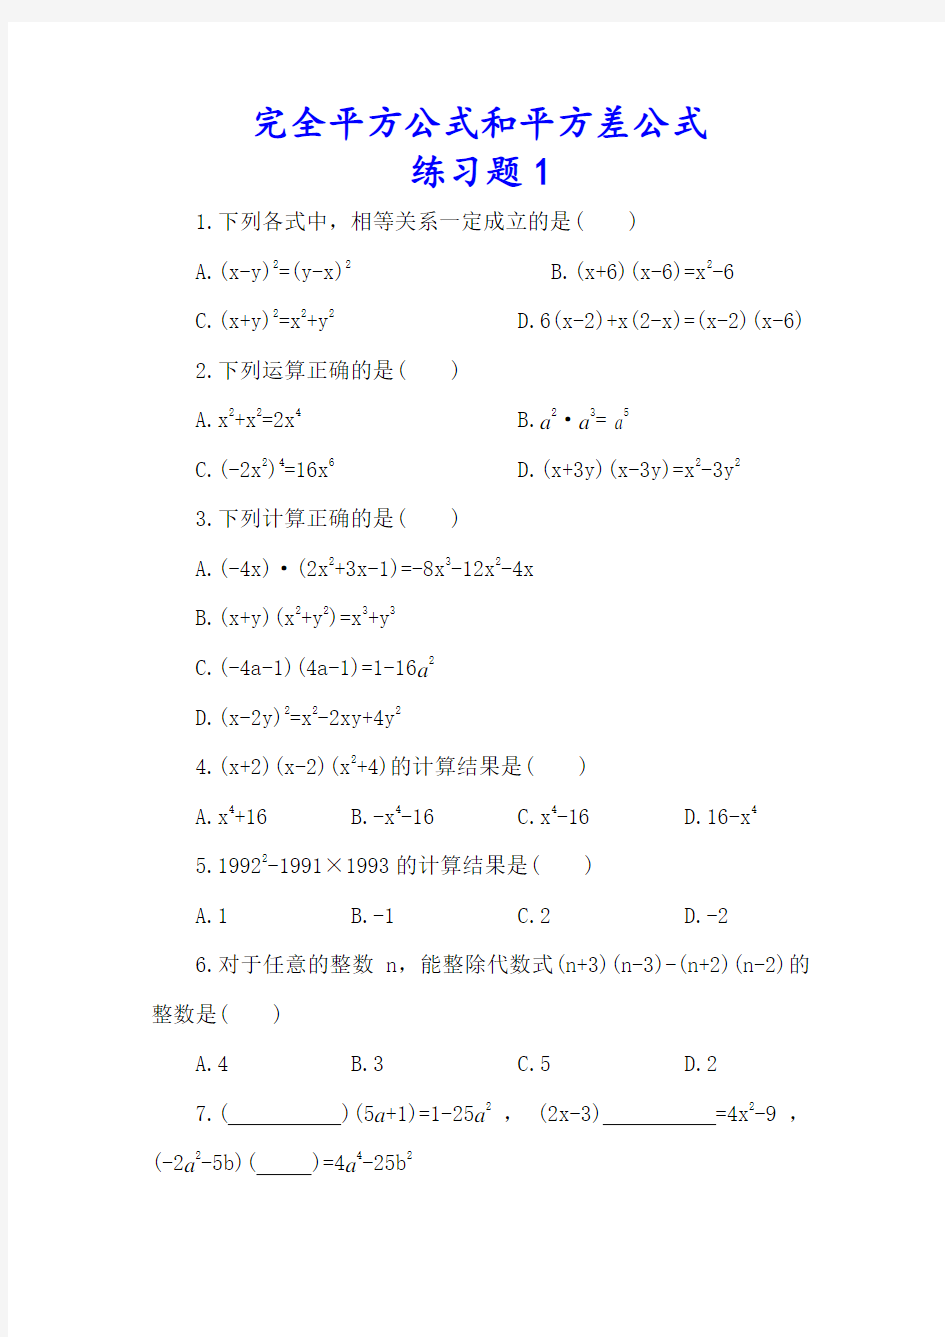 (完整版)七年级数学下册完全平方公式和平方差公式练习题2套